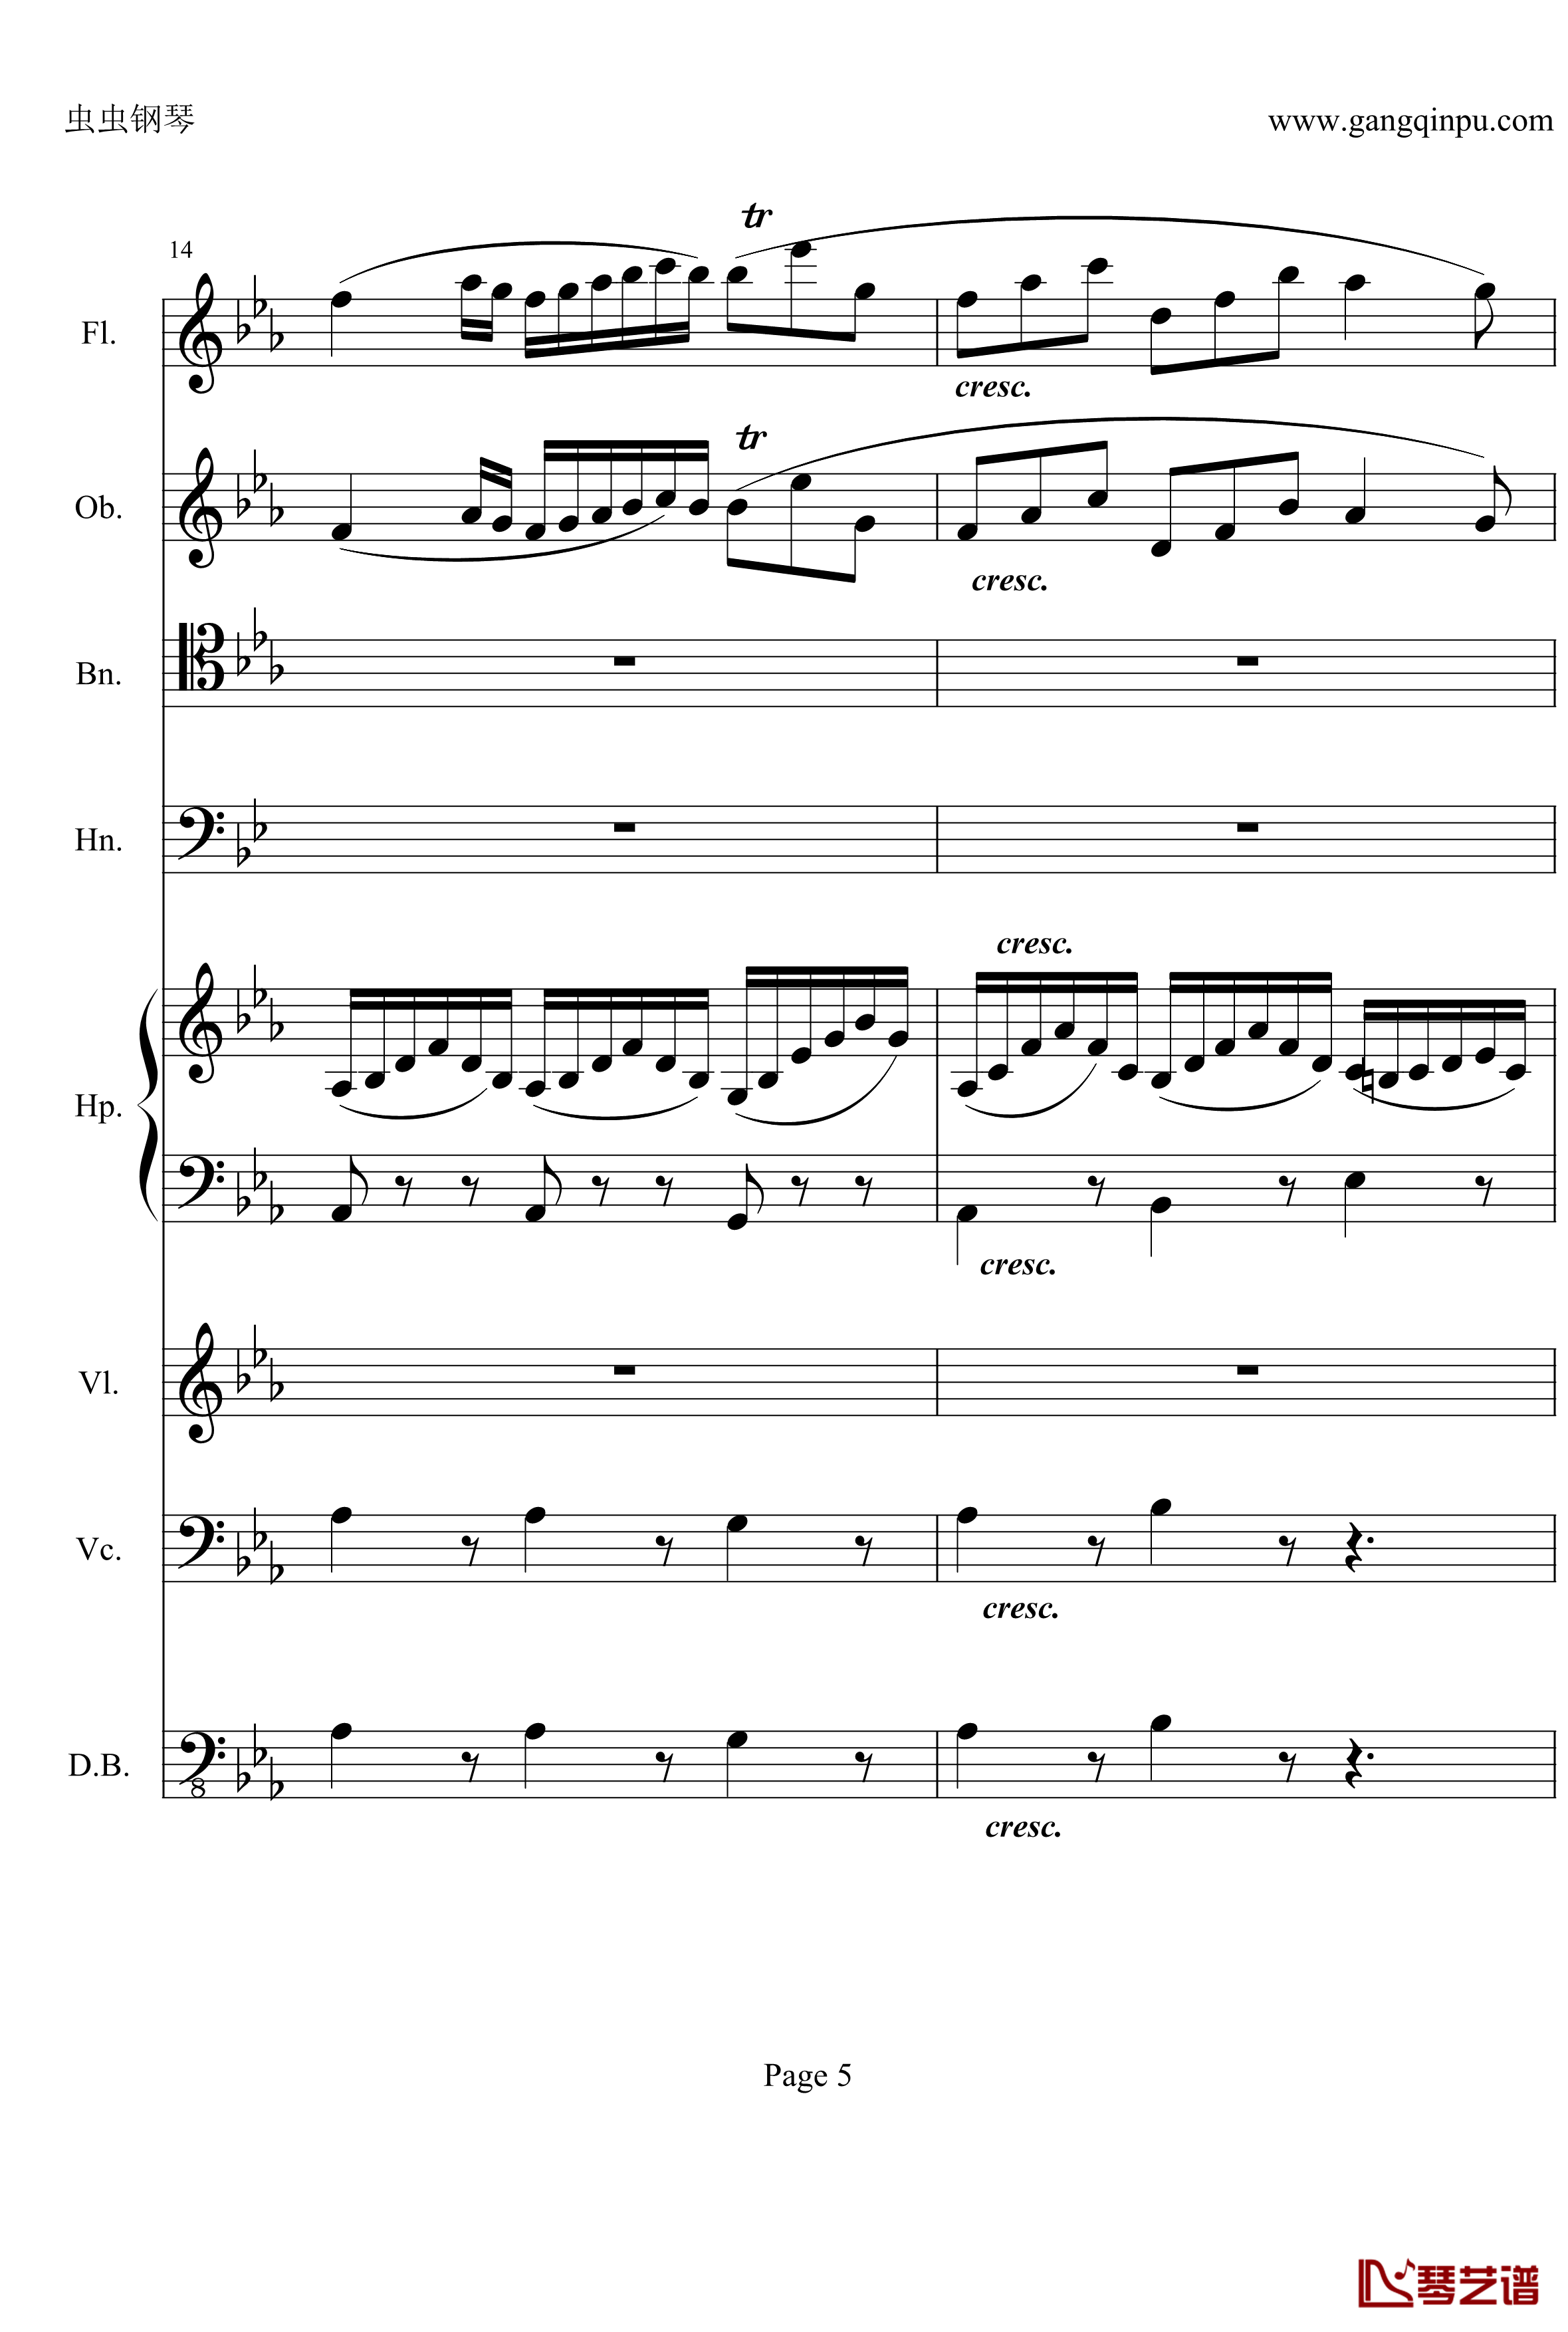 奏鸣曲之交响钢琴谱-第25首-Ⅱ-贝多芬-beethoven5